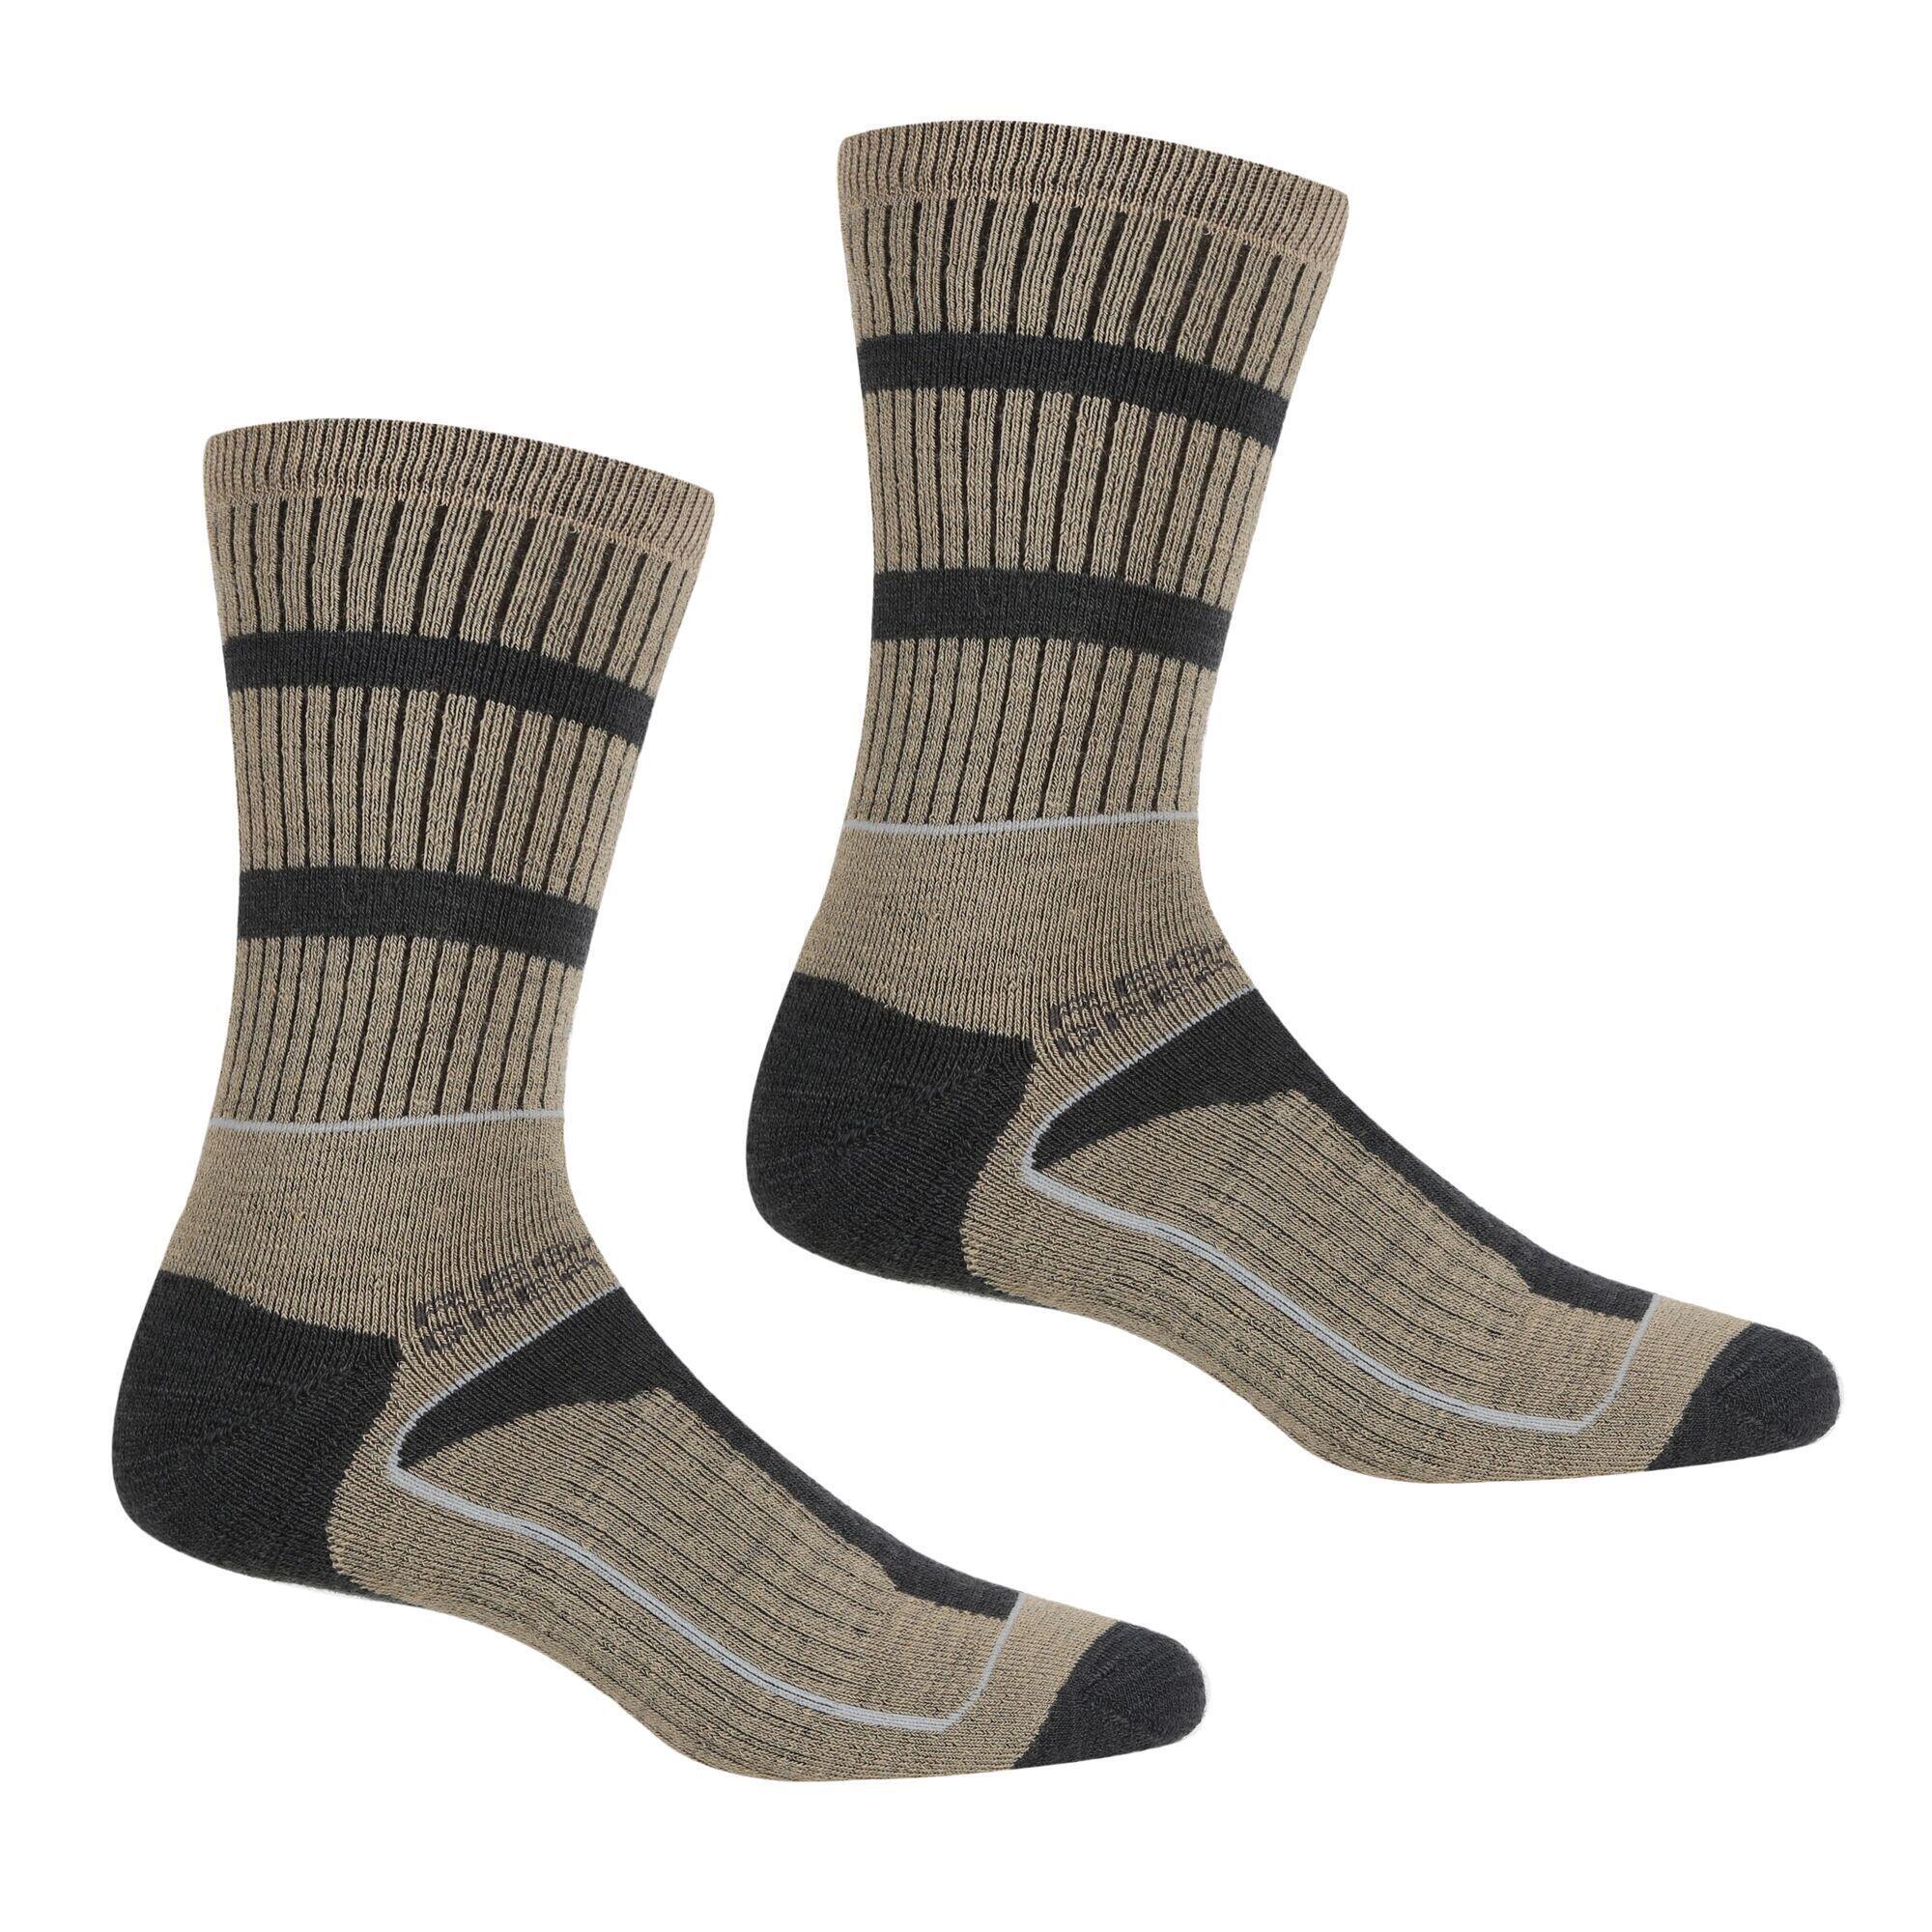 REGATTA Mens Samaris 3 Season Socks (Pack of 2) (Moccasin Brown/Briar Grey)